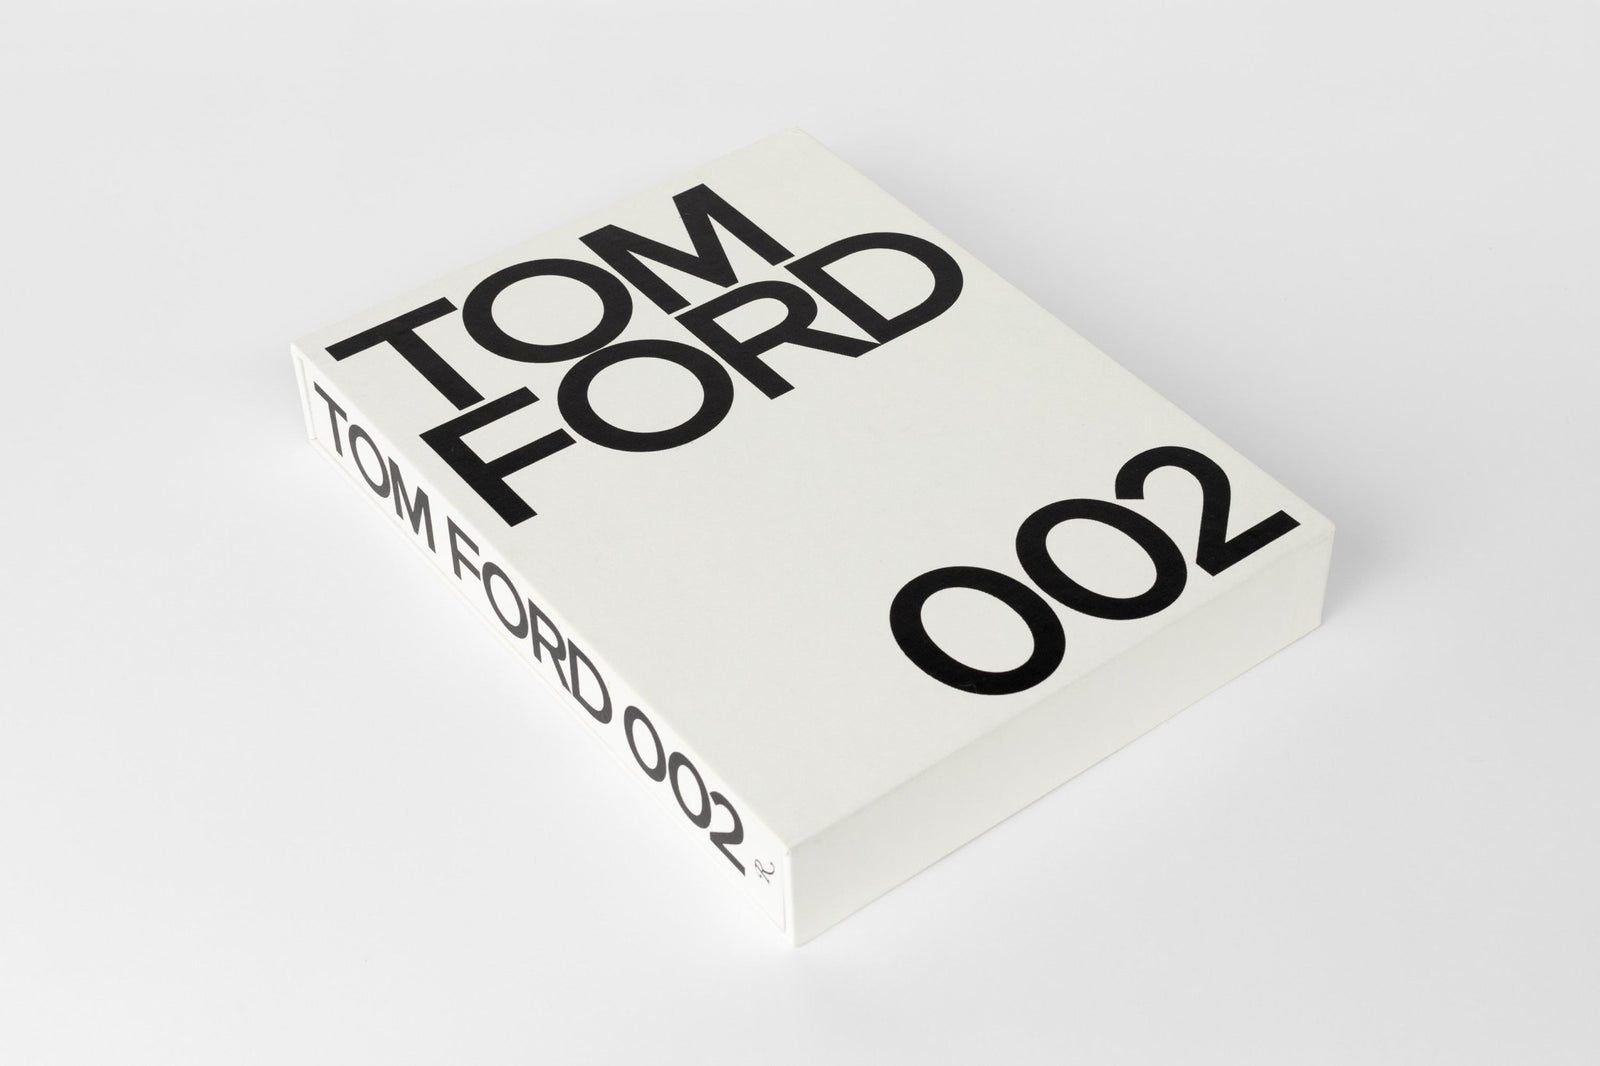 Tom Ford 002 | Jardan | Homeware